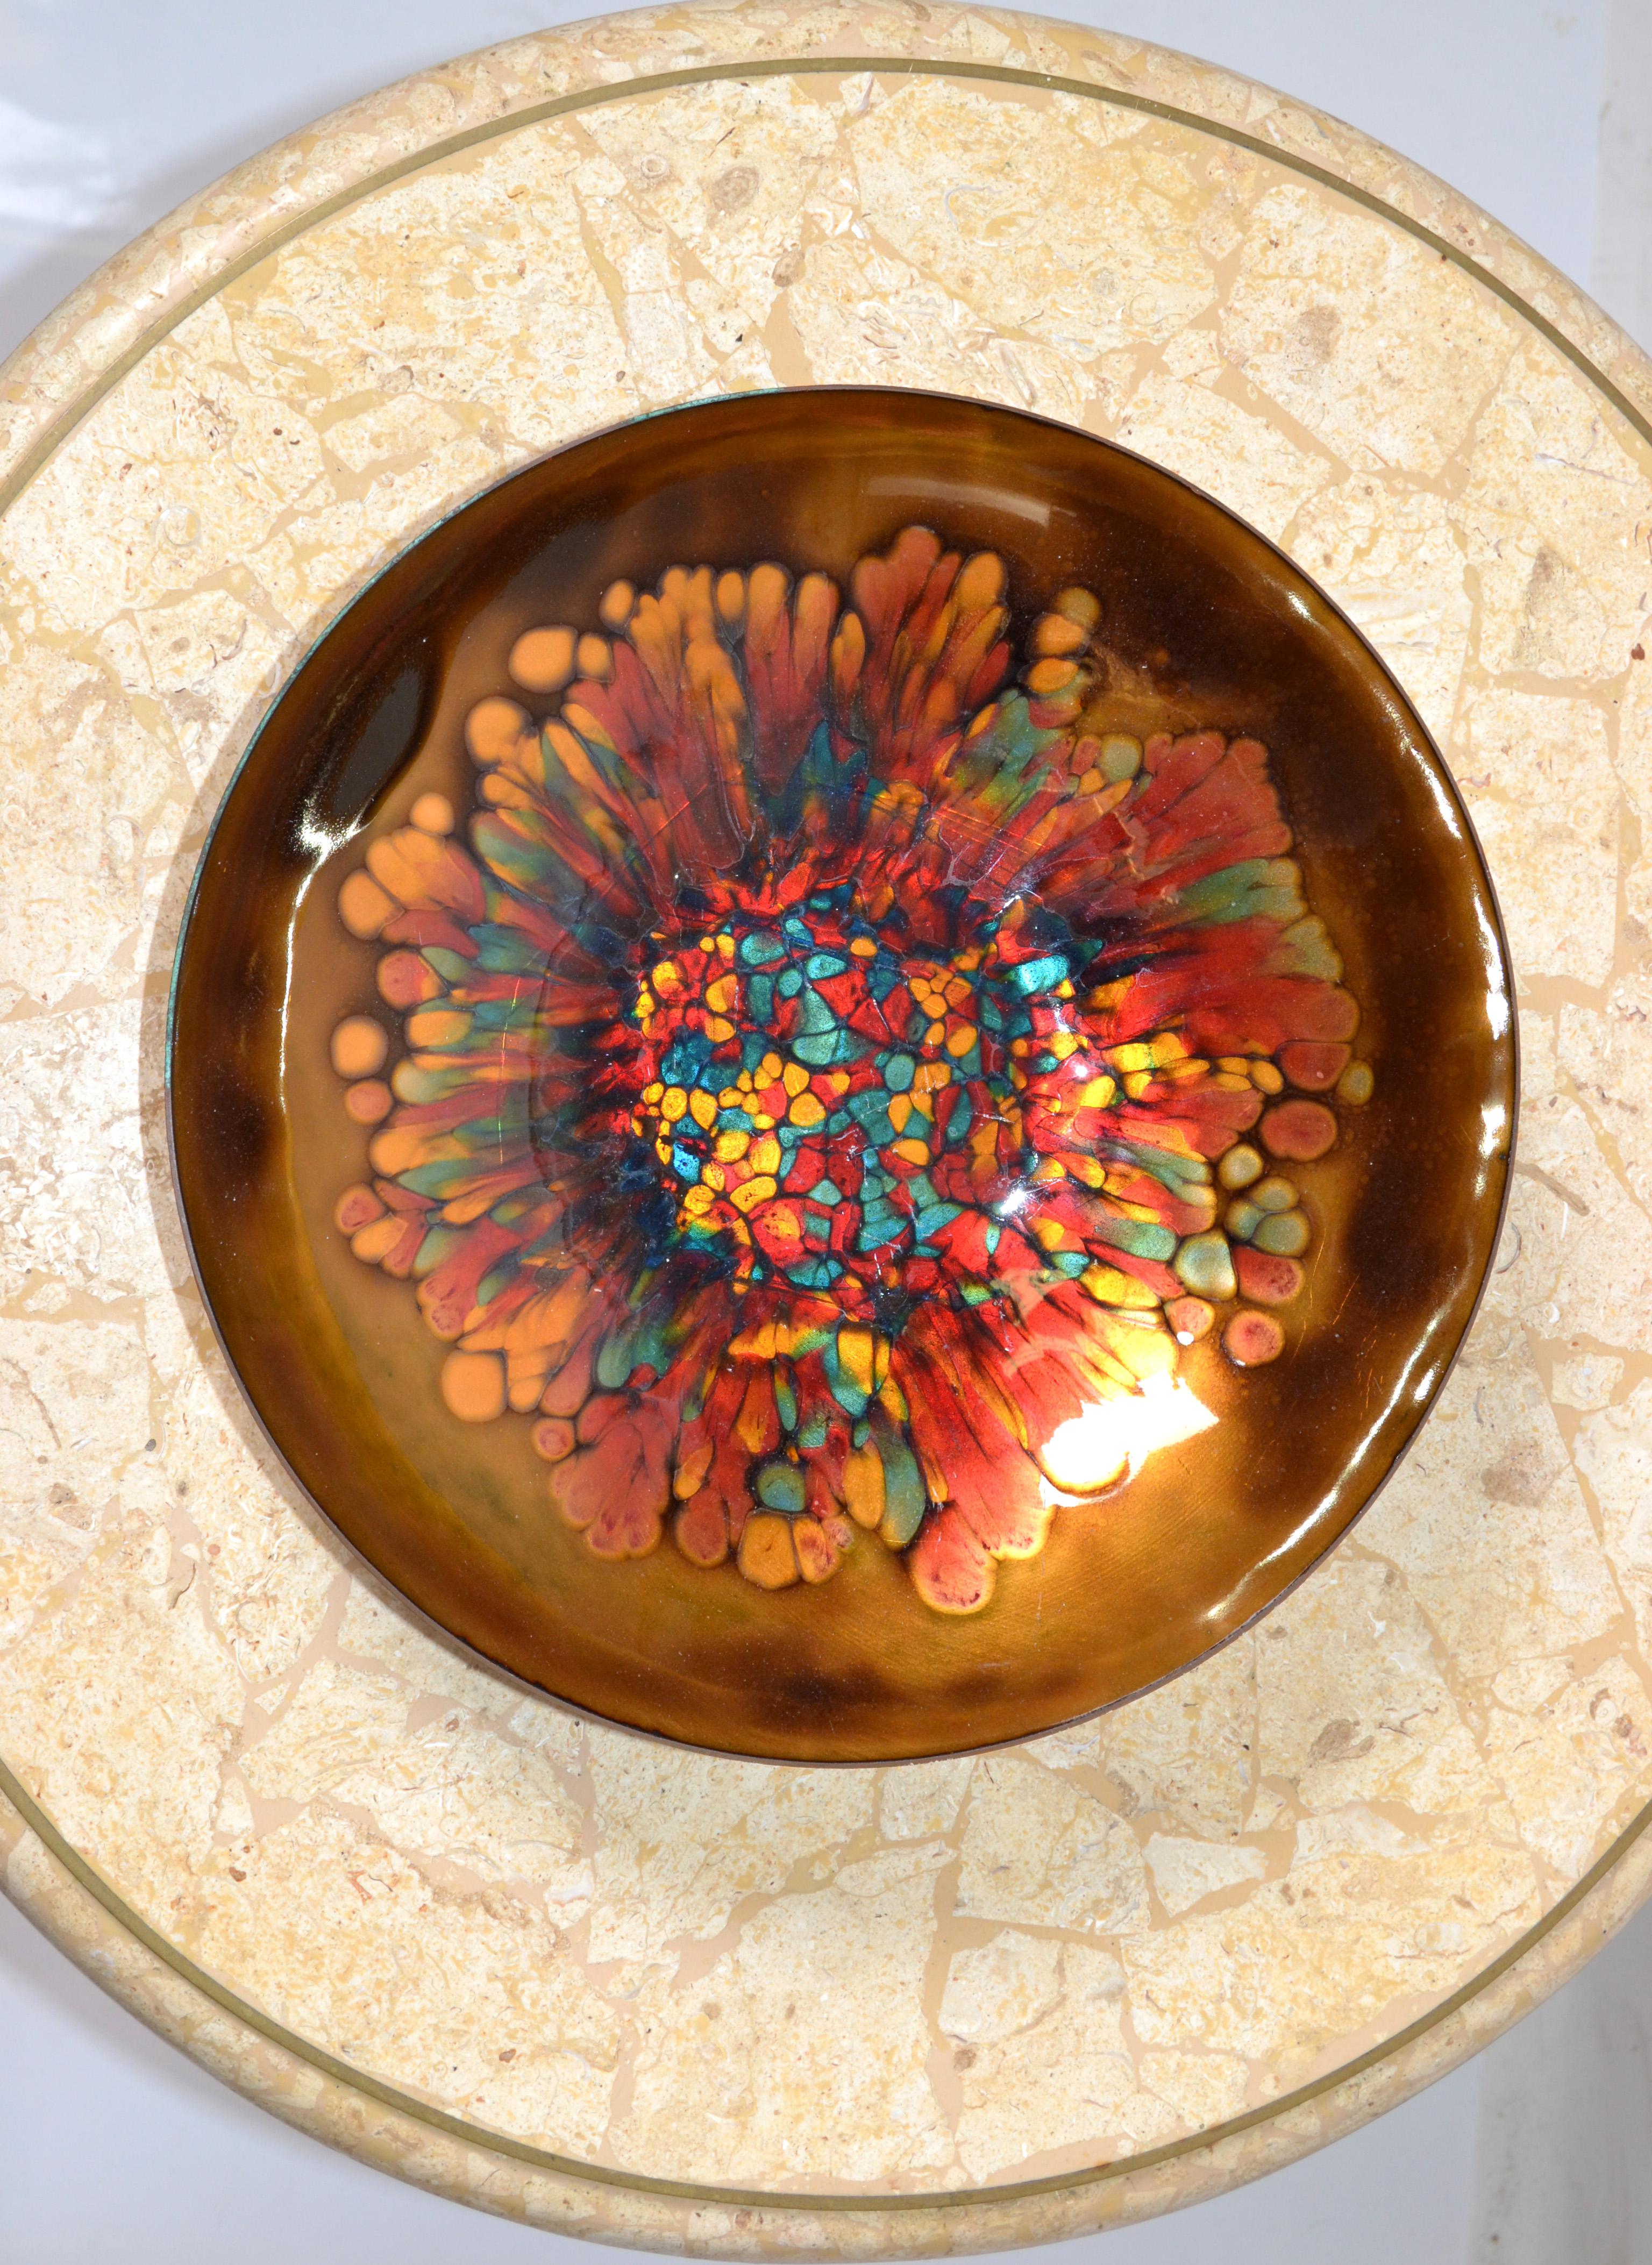 Hammered Vintage Kareka Enamel Over Copper Decorative Bowl, Plate, Centerpiece